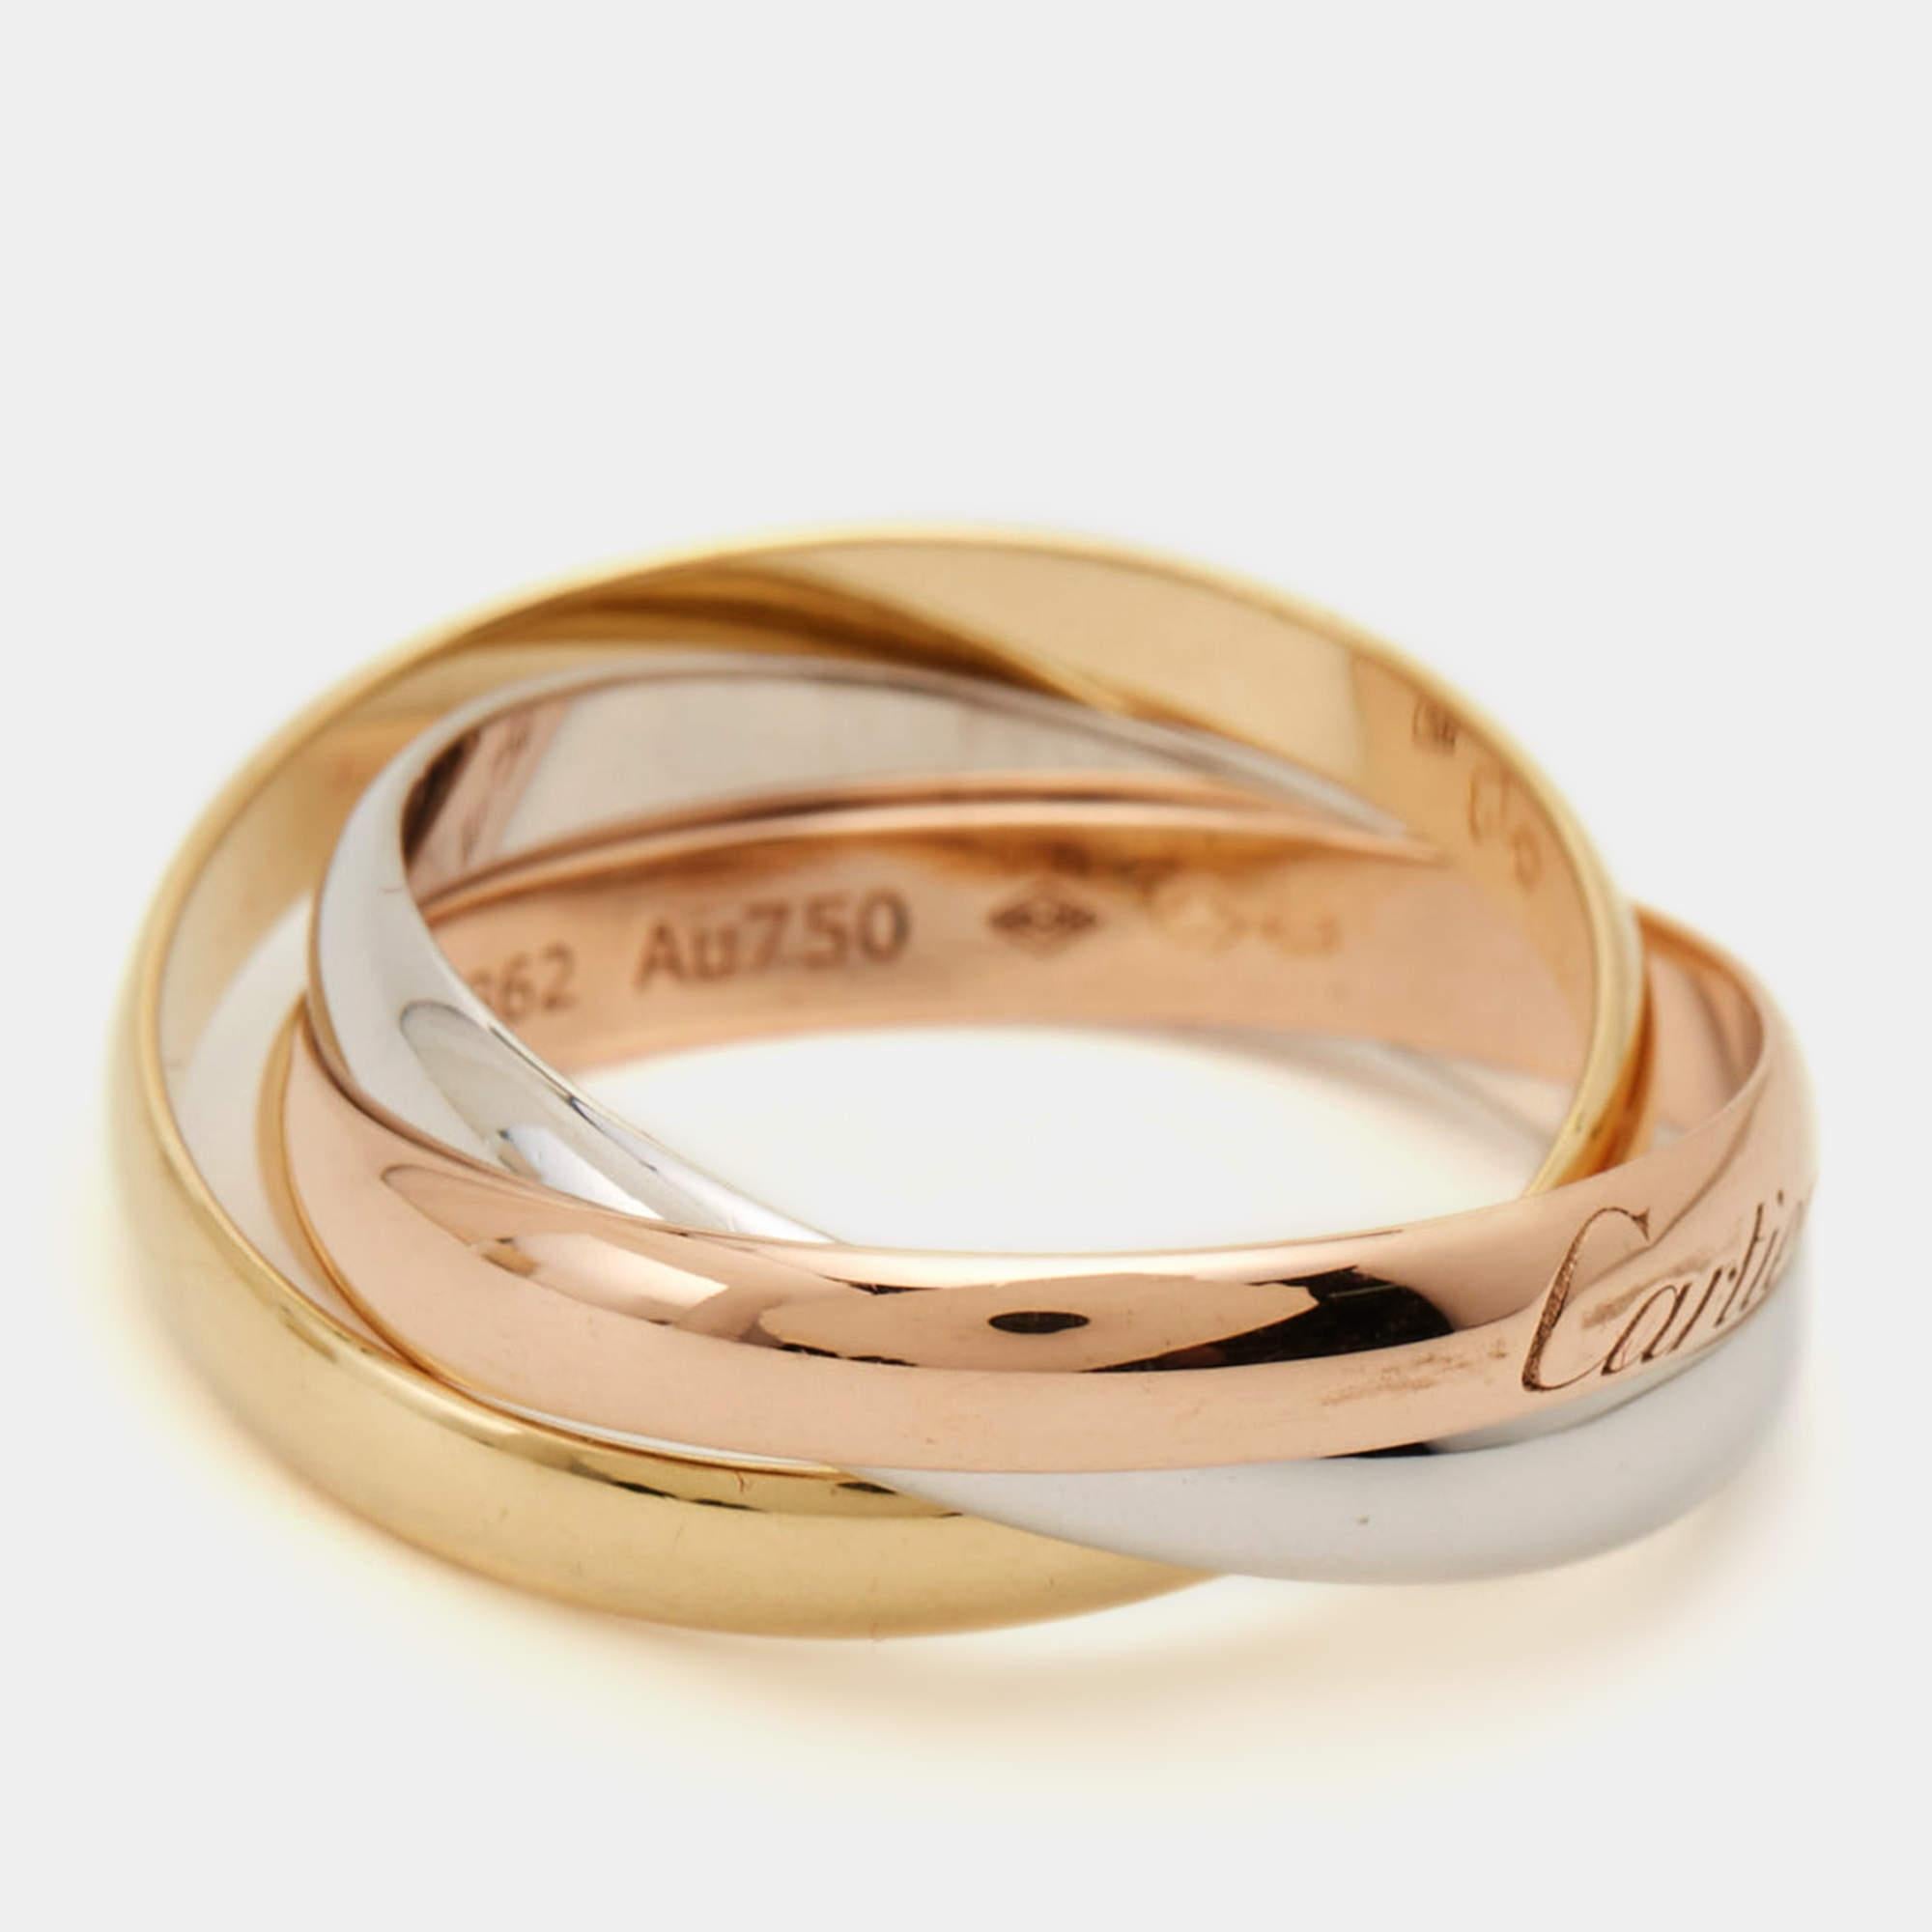 Der Trinity-Ring wurde 1924 von Louis Cartier entworfen und ist bis heute ein berühmtes Design von Cartier. Das zentrale Motiv der Trinity Collection ist der Ring, der als Dreier-Set in Rosé-, Gelb- und Weißgold erhältlich ist und Liebe, Treue und